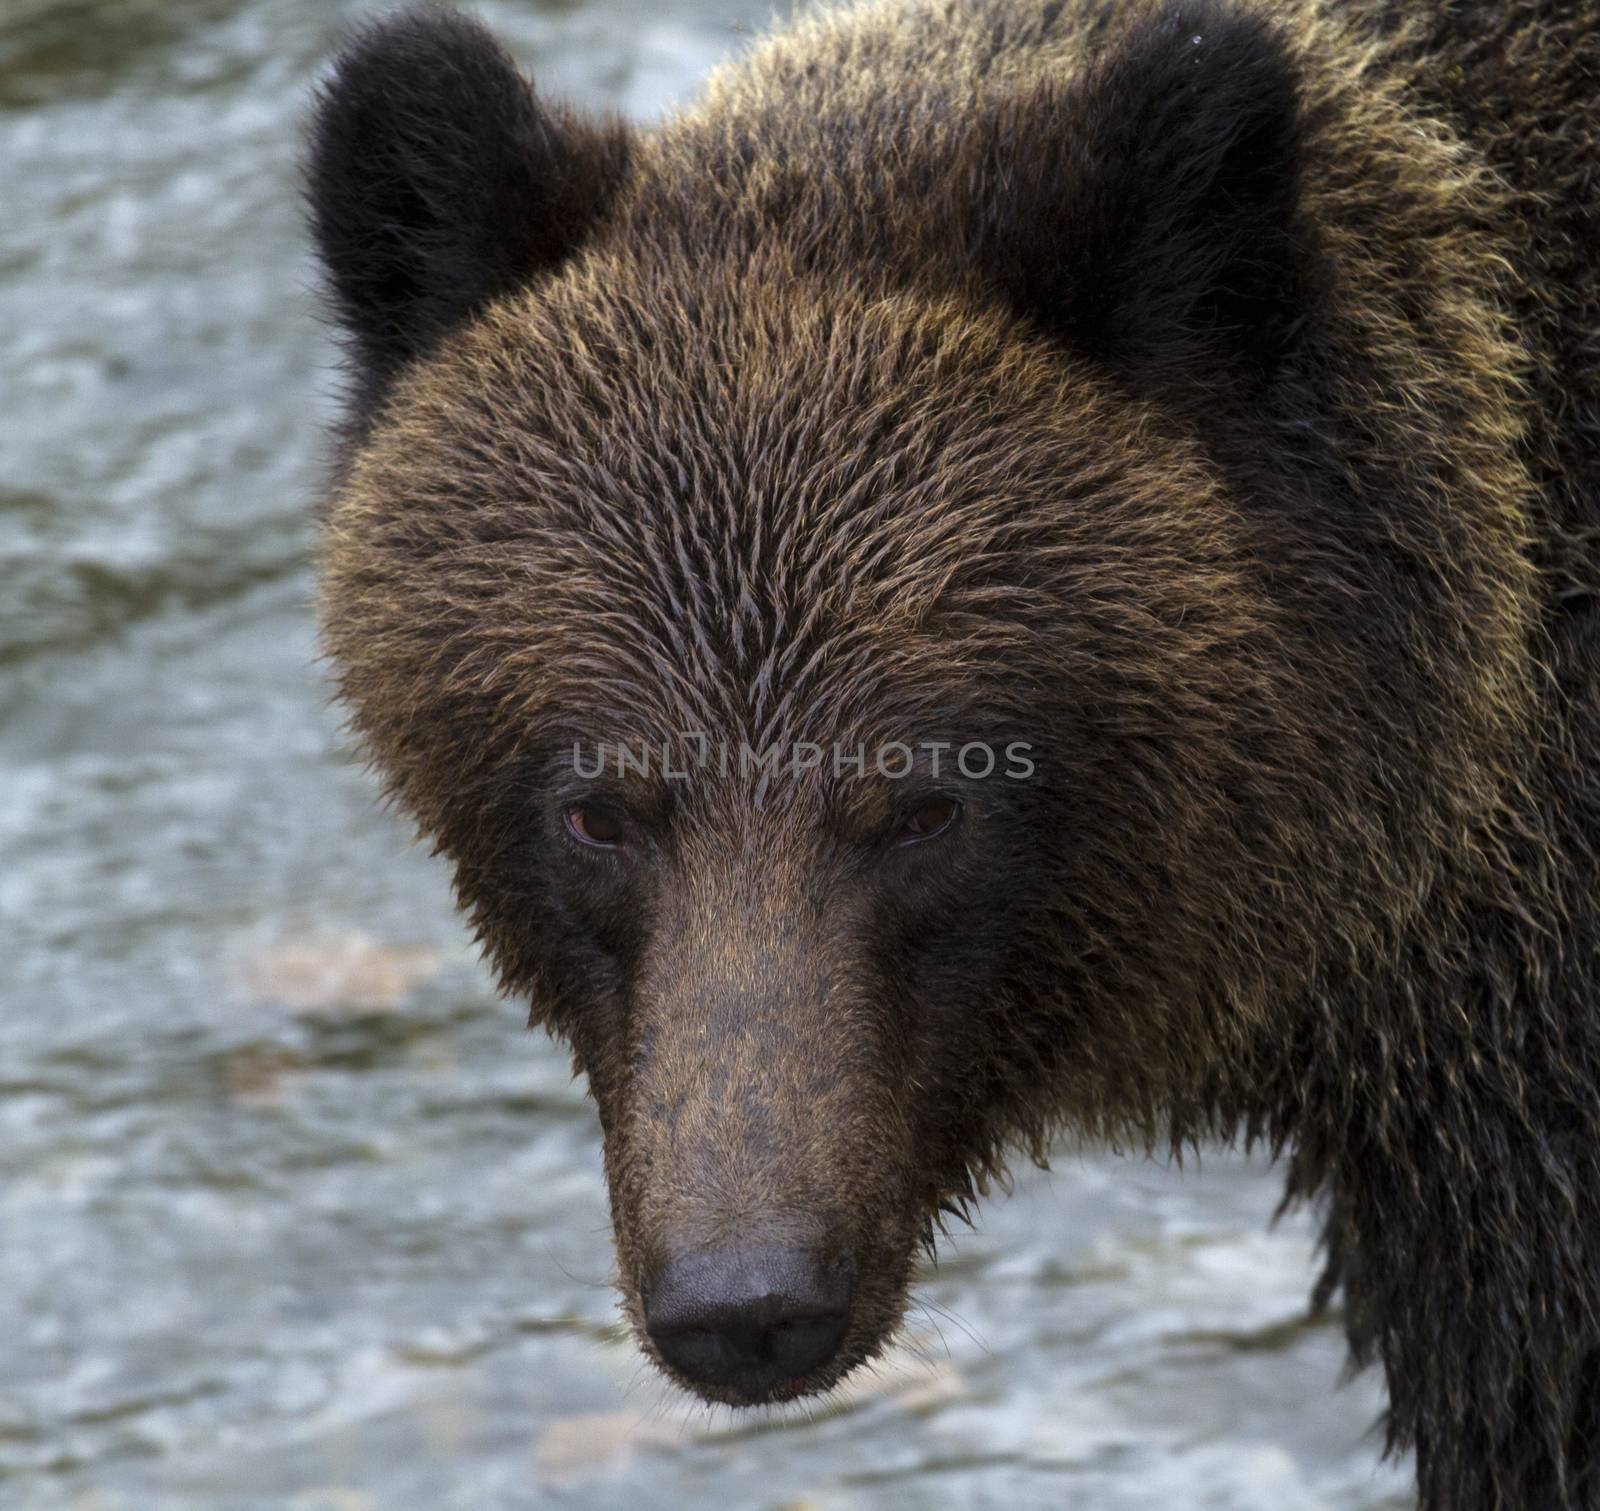 Dark eyes of a grizzly bear by fmcginn